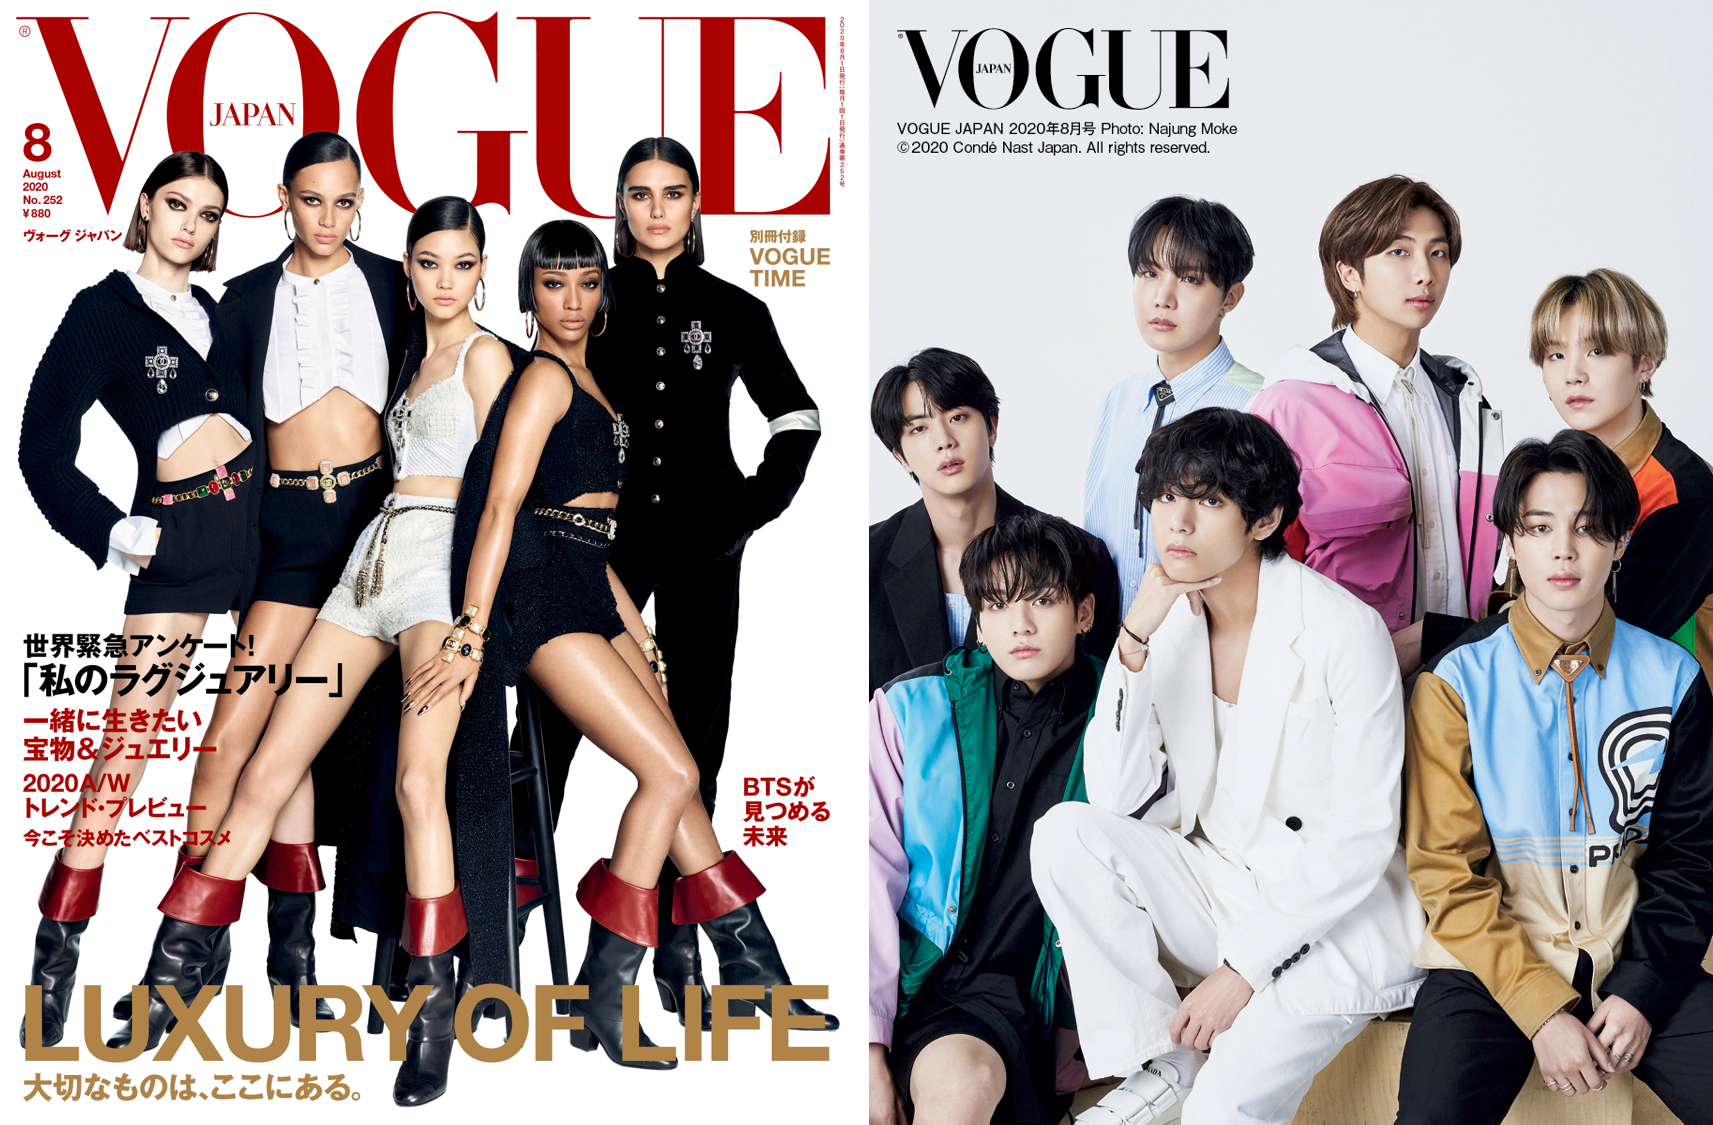 Btsが Vogue Japan に初登場 ファンへの想いや未来について 独占撮影 インタビュー コンデナスト ジャパンのプレスリリース